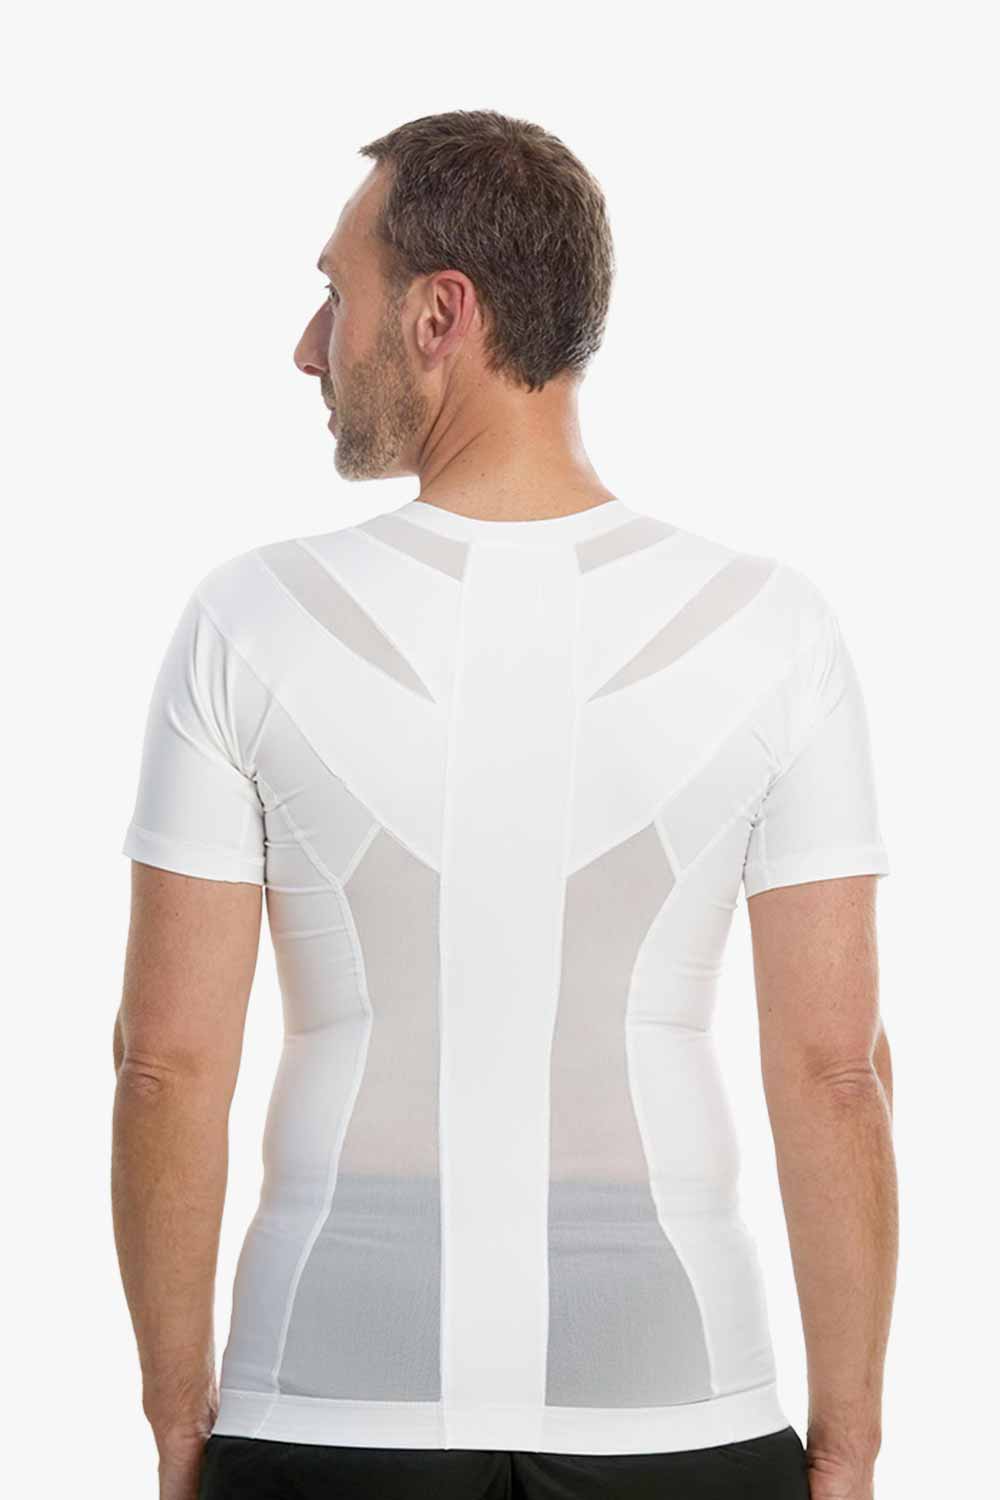 weiß posture shirt für männer